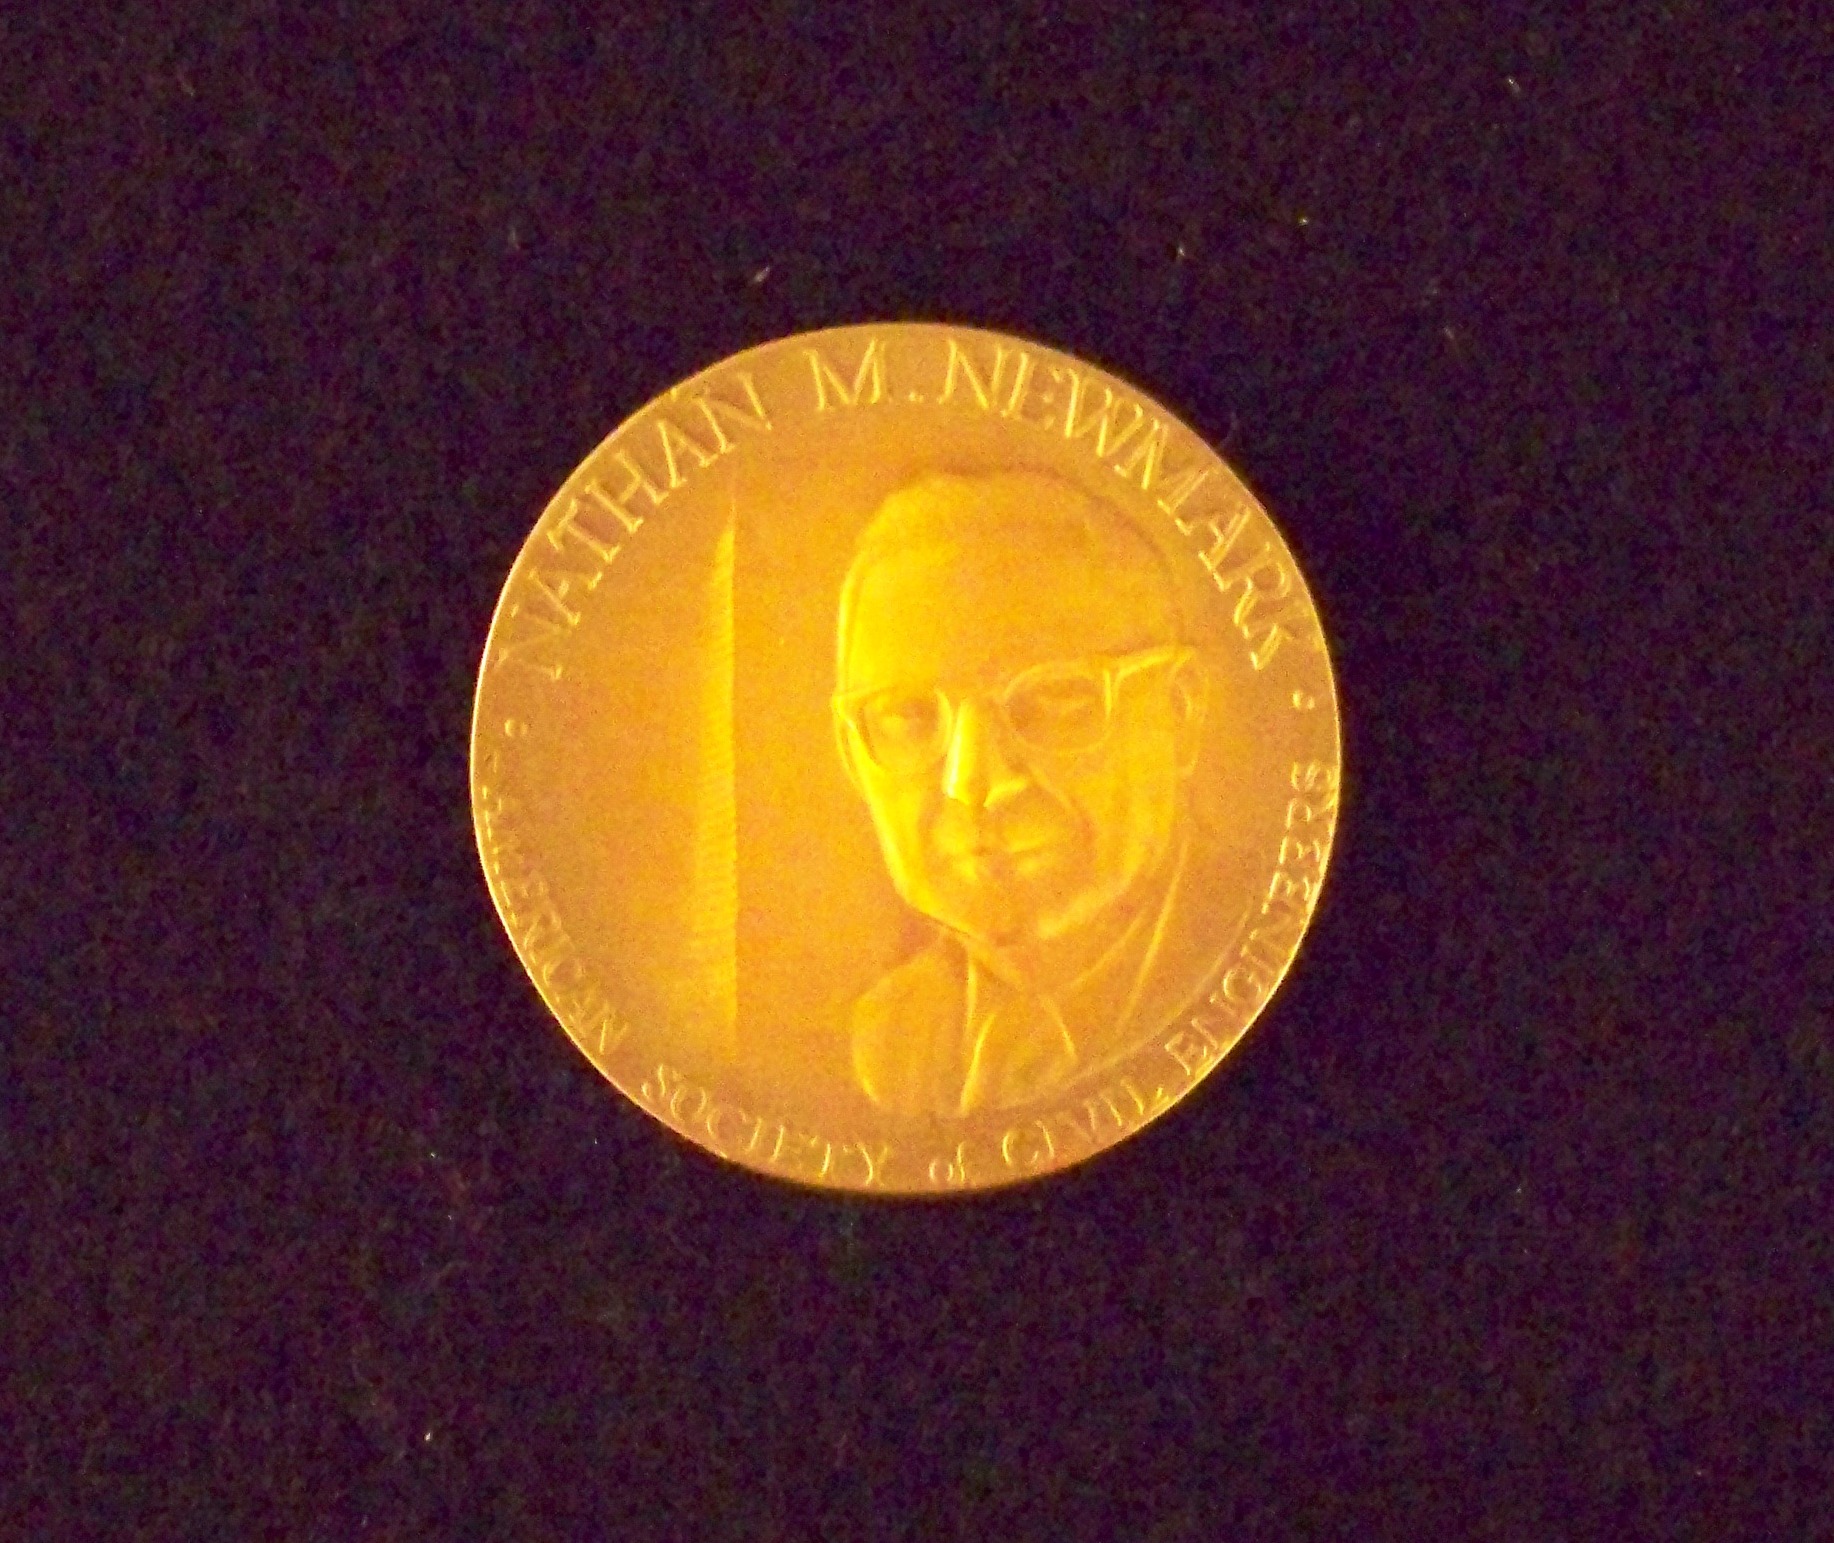 Newmark Medal